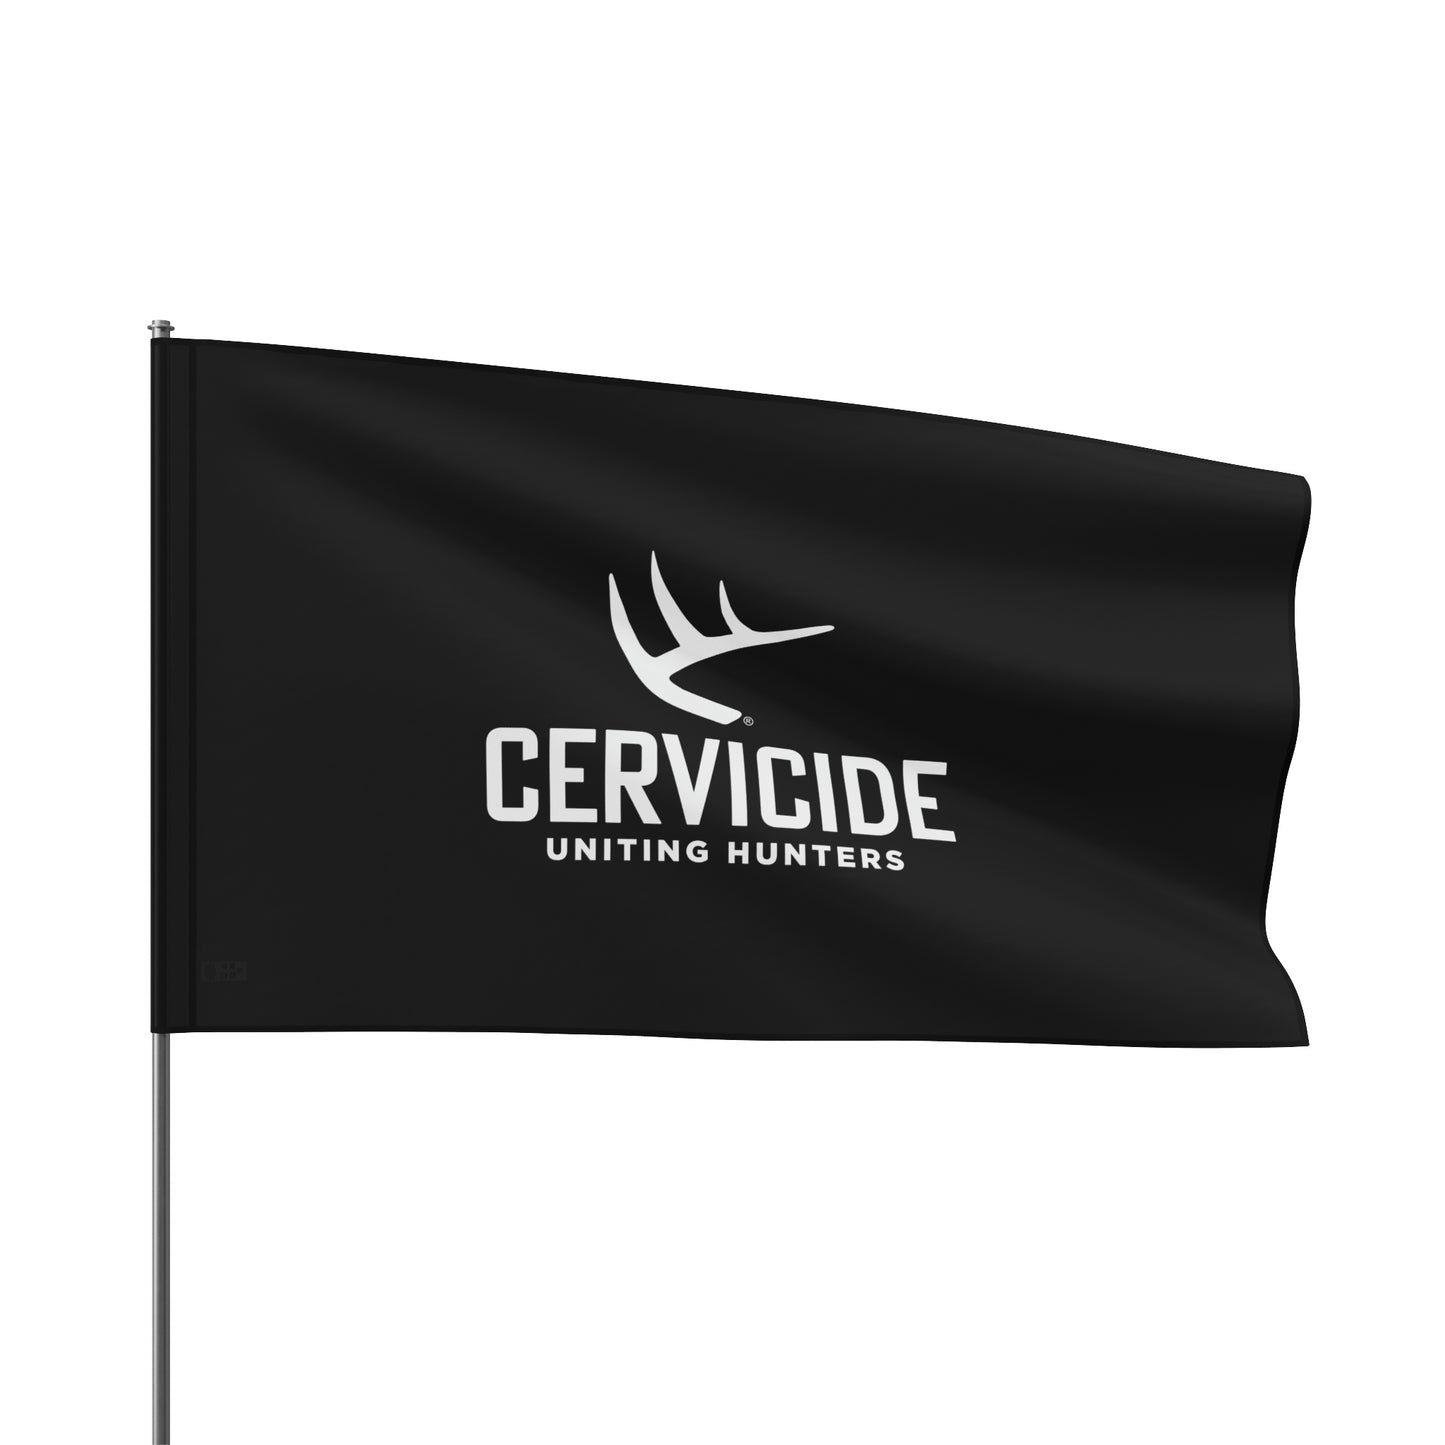 Cervicide Uniting Hunters Black Flag